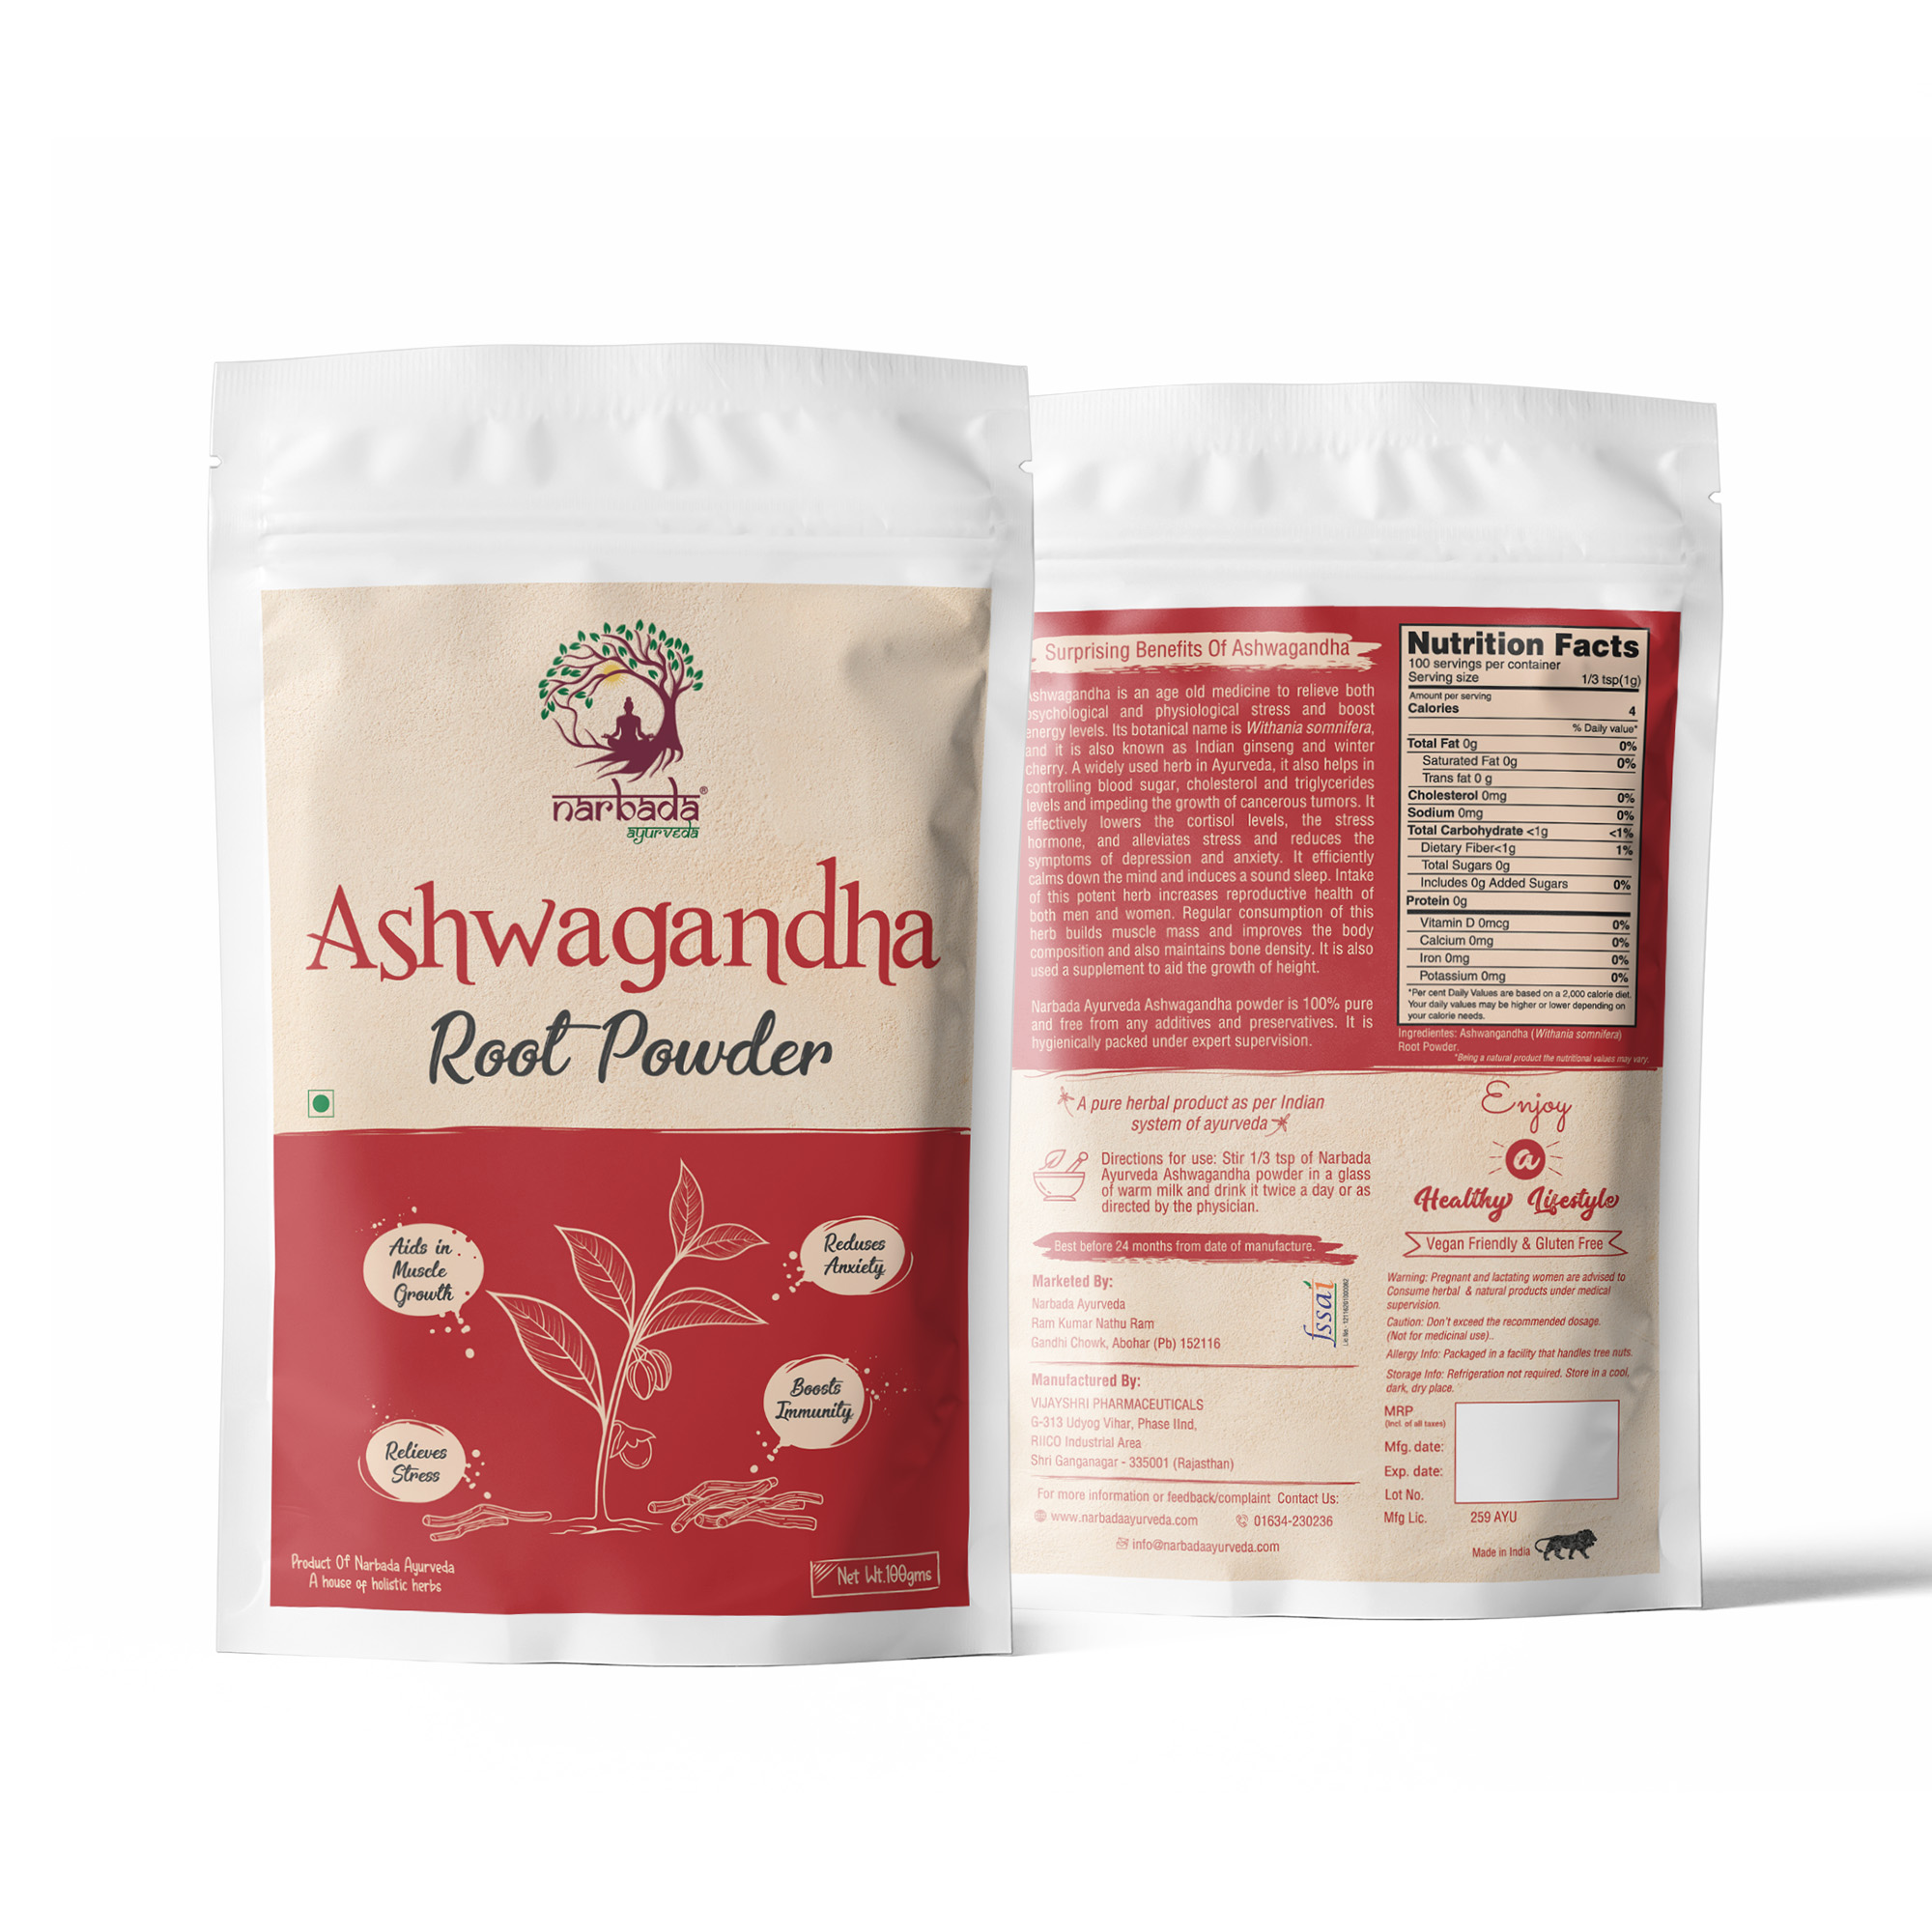 Buy Narbada Ayurveda Ashwagandha Powder at Best Price Online